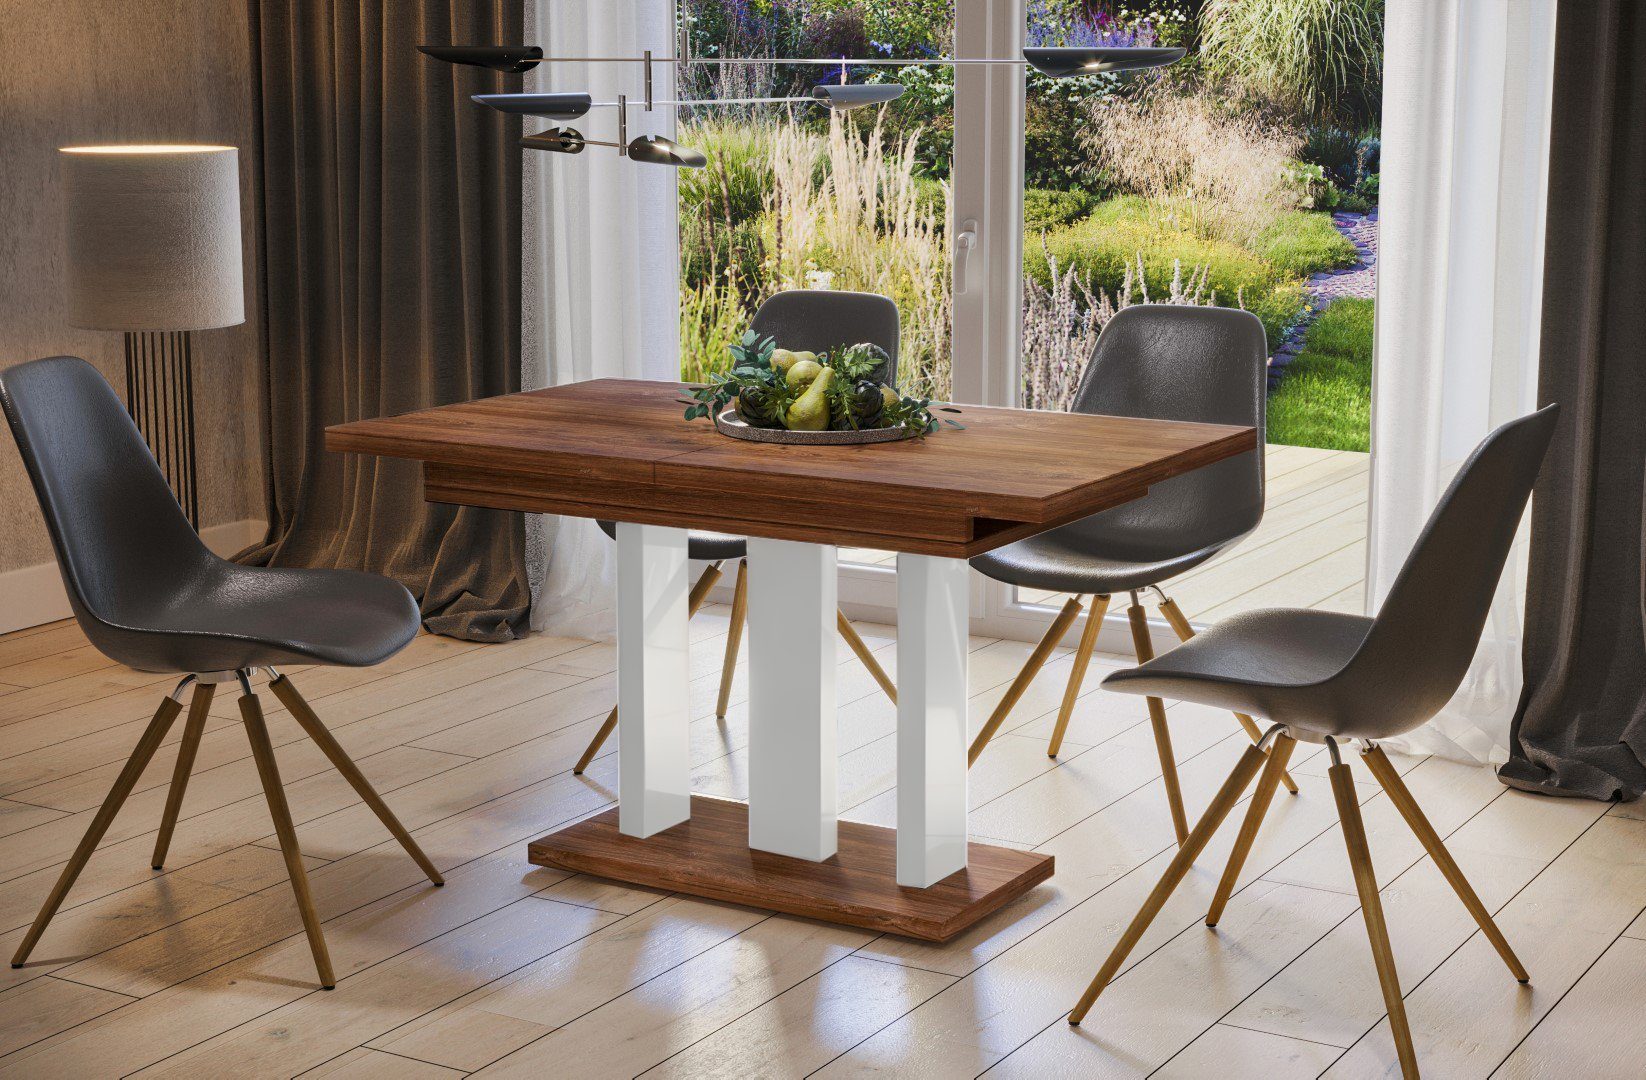 Säulentisch, Küchentisch, Beine, ausziehbar Endo-Moebel modern, Säulen-Esstisch White" Eiche Hochglanz "Appia 130-210cm Weiß erweiterbar, Stirling